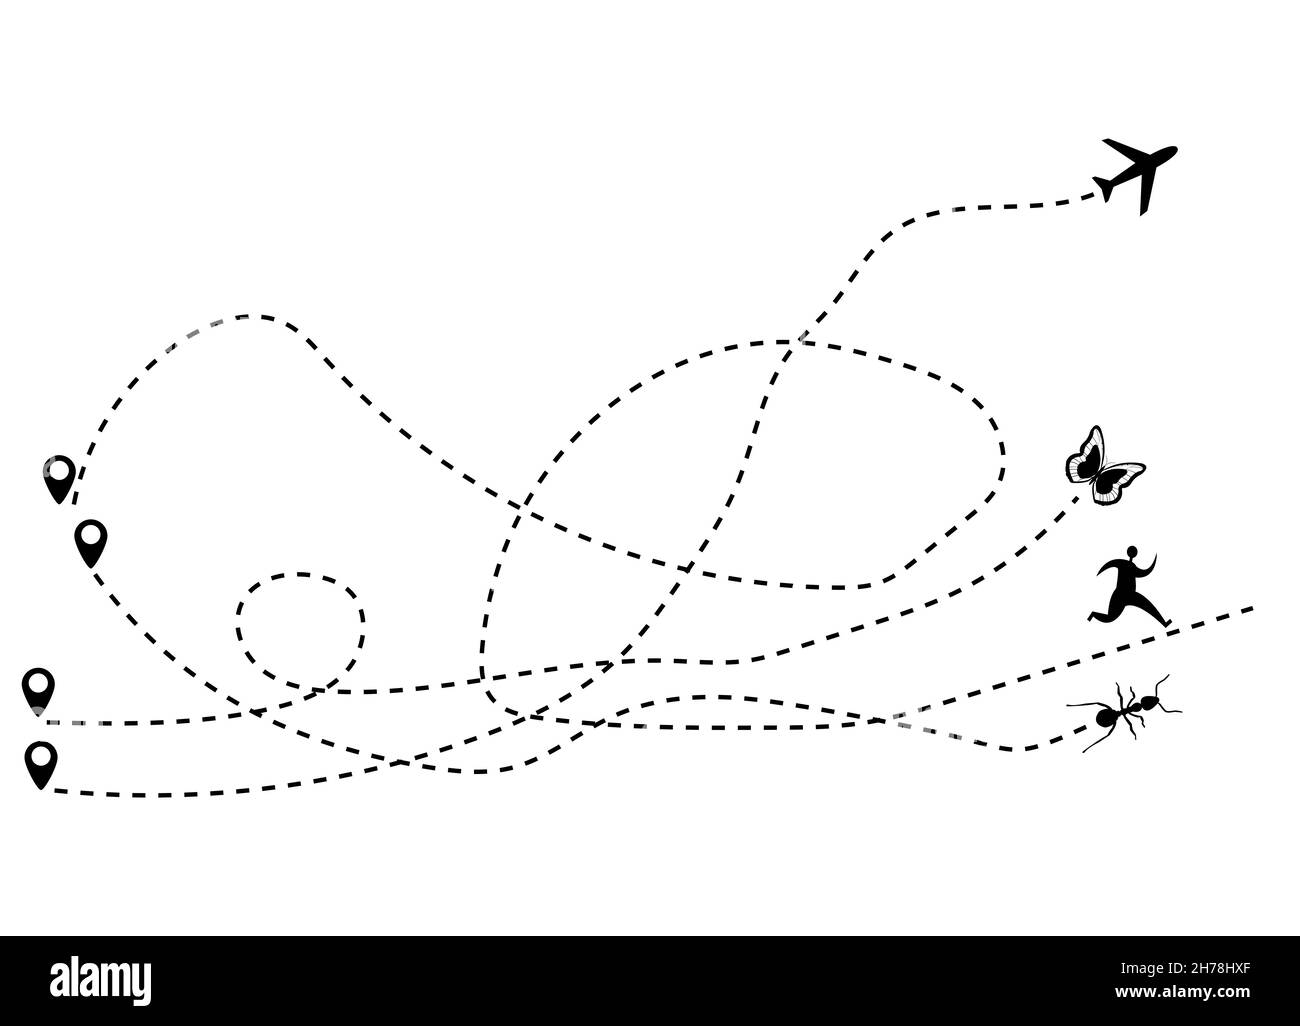 Línea punteada de la ruta del avión, mariposa, hombre y hormiga. Turismo y viajes. Ilustración vectorial. Ilustración del Vector